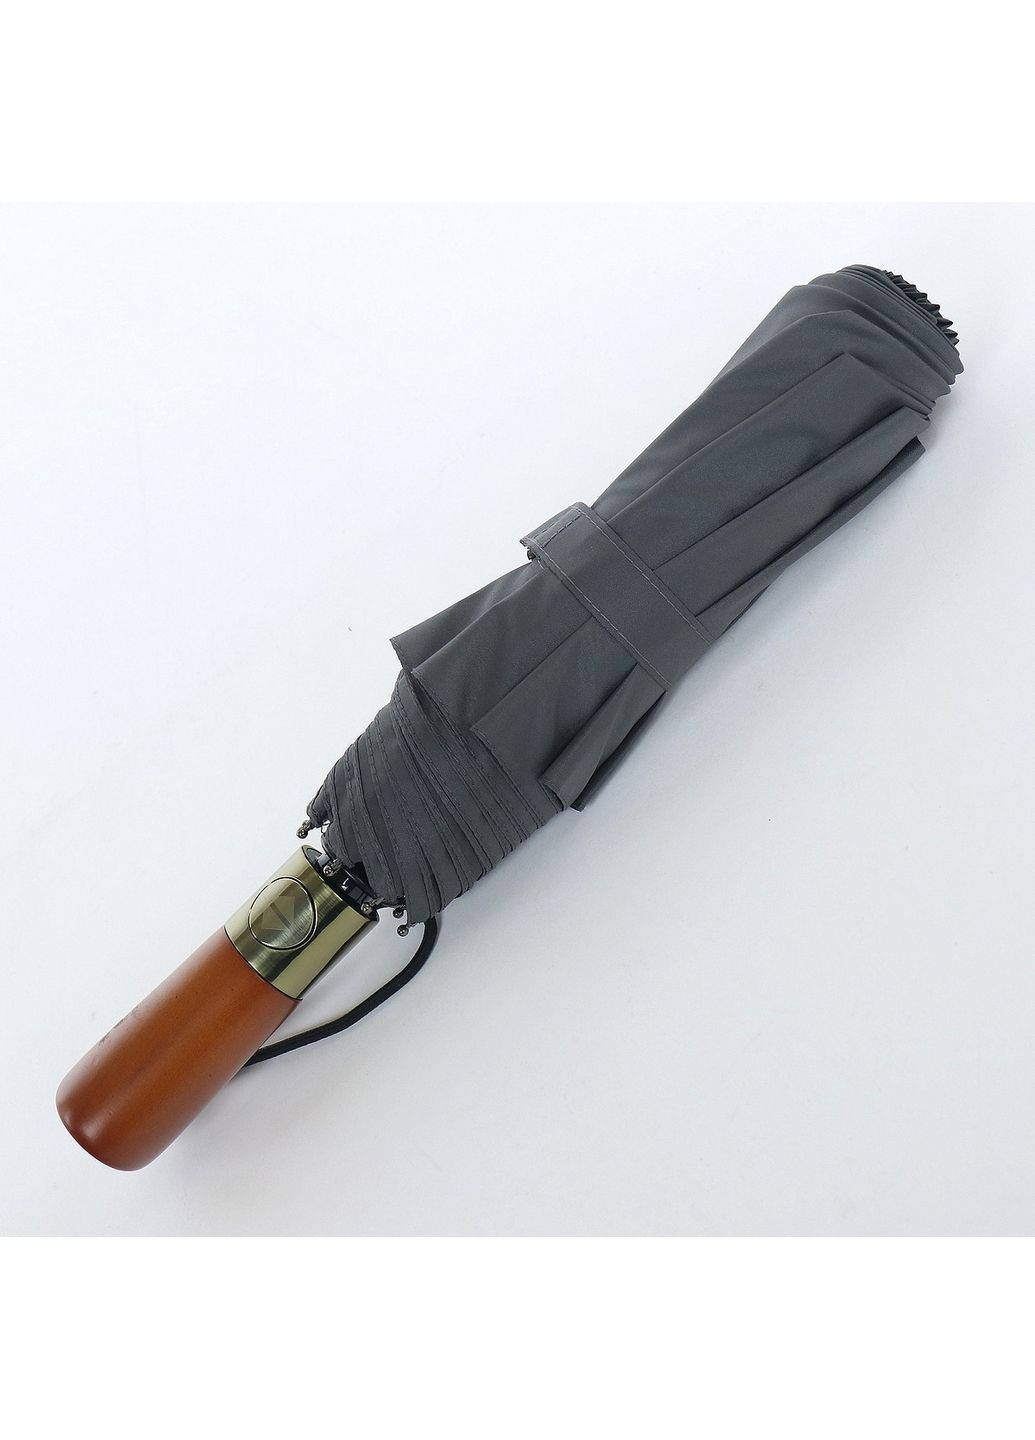 Складной мужской зонт автомат ArtRain (288186958)